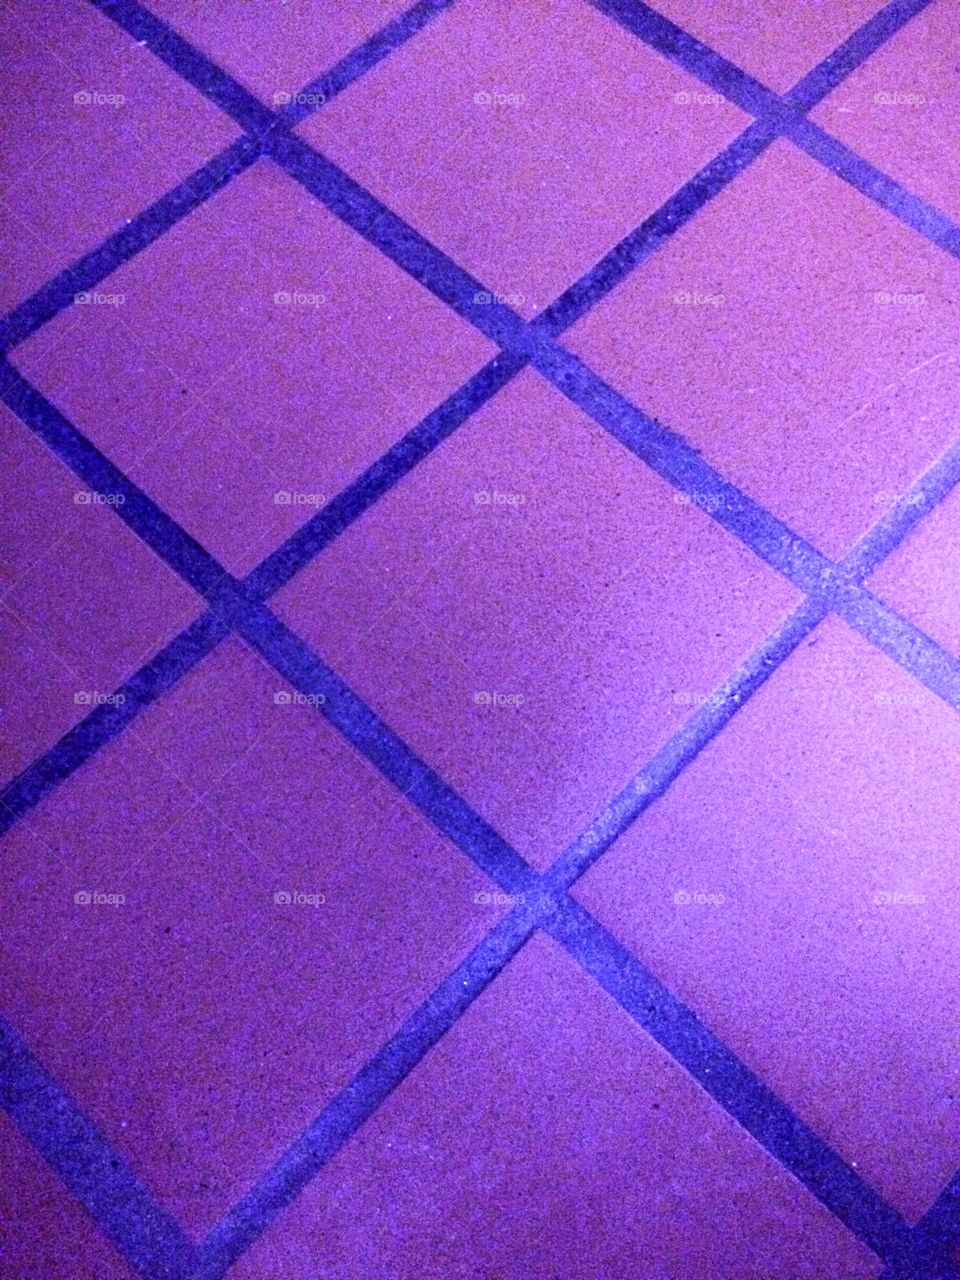 Purple ceramic floor